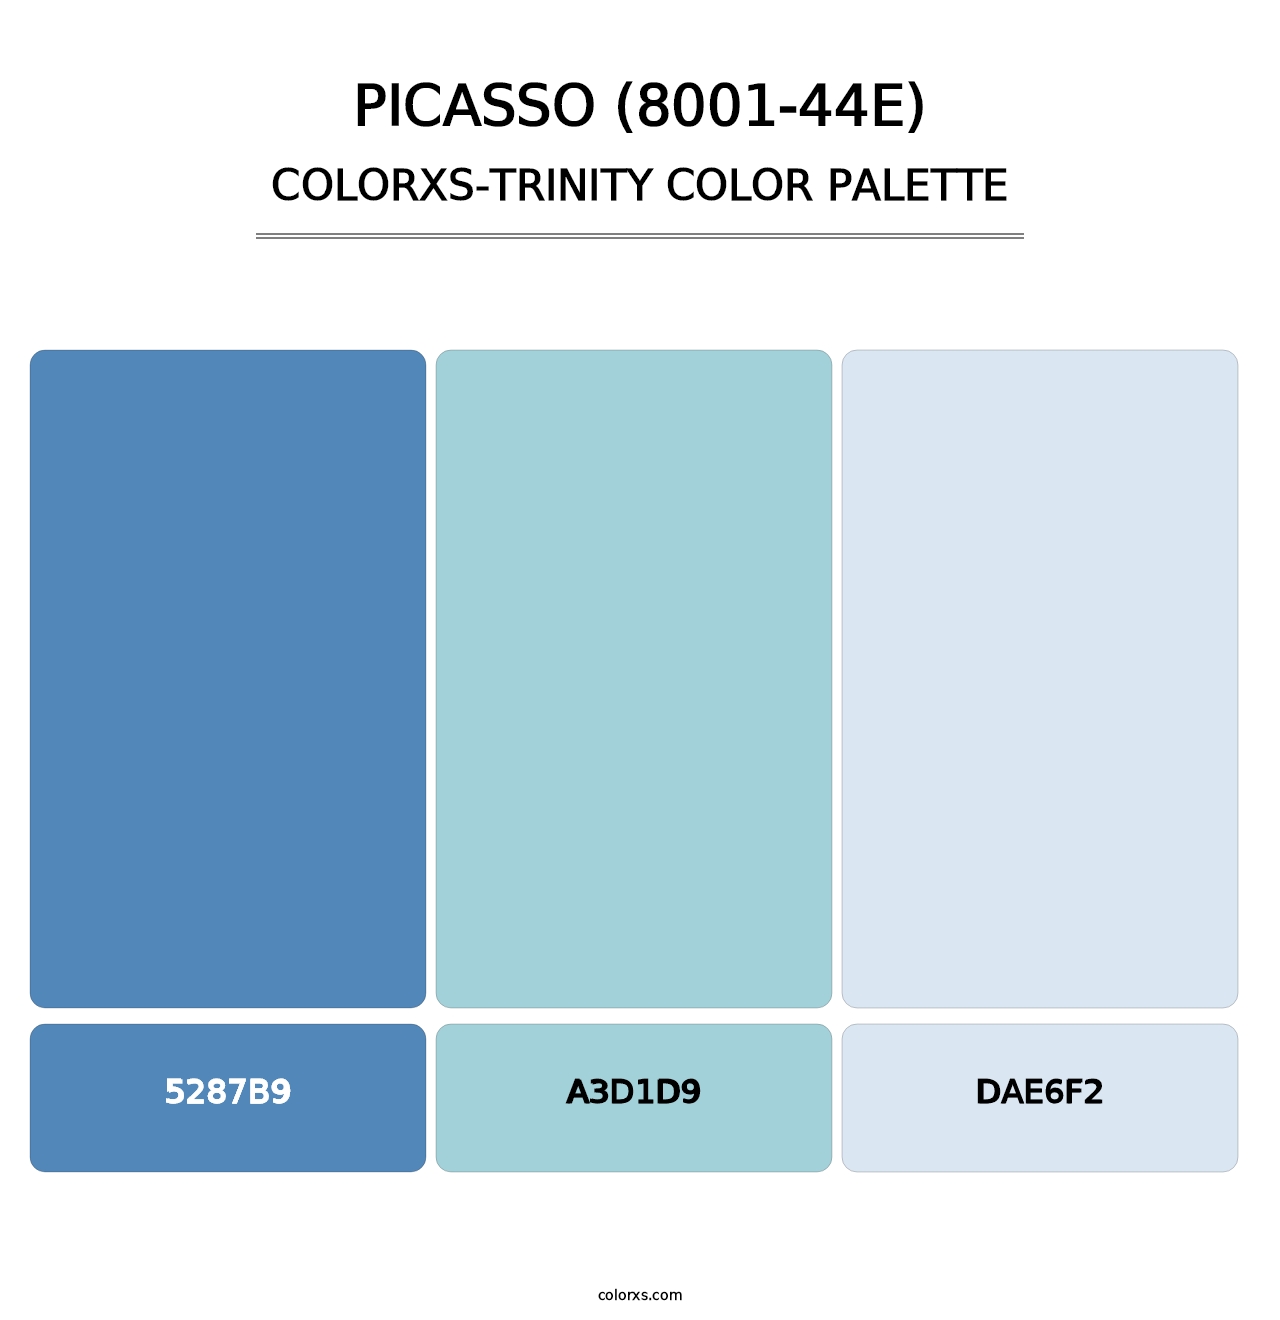 Picasso (8001-44E) - Colorxs Trinity Palette